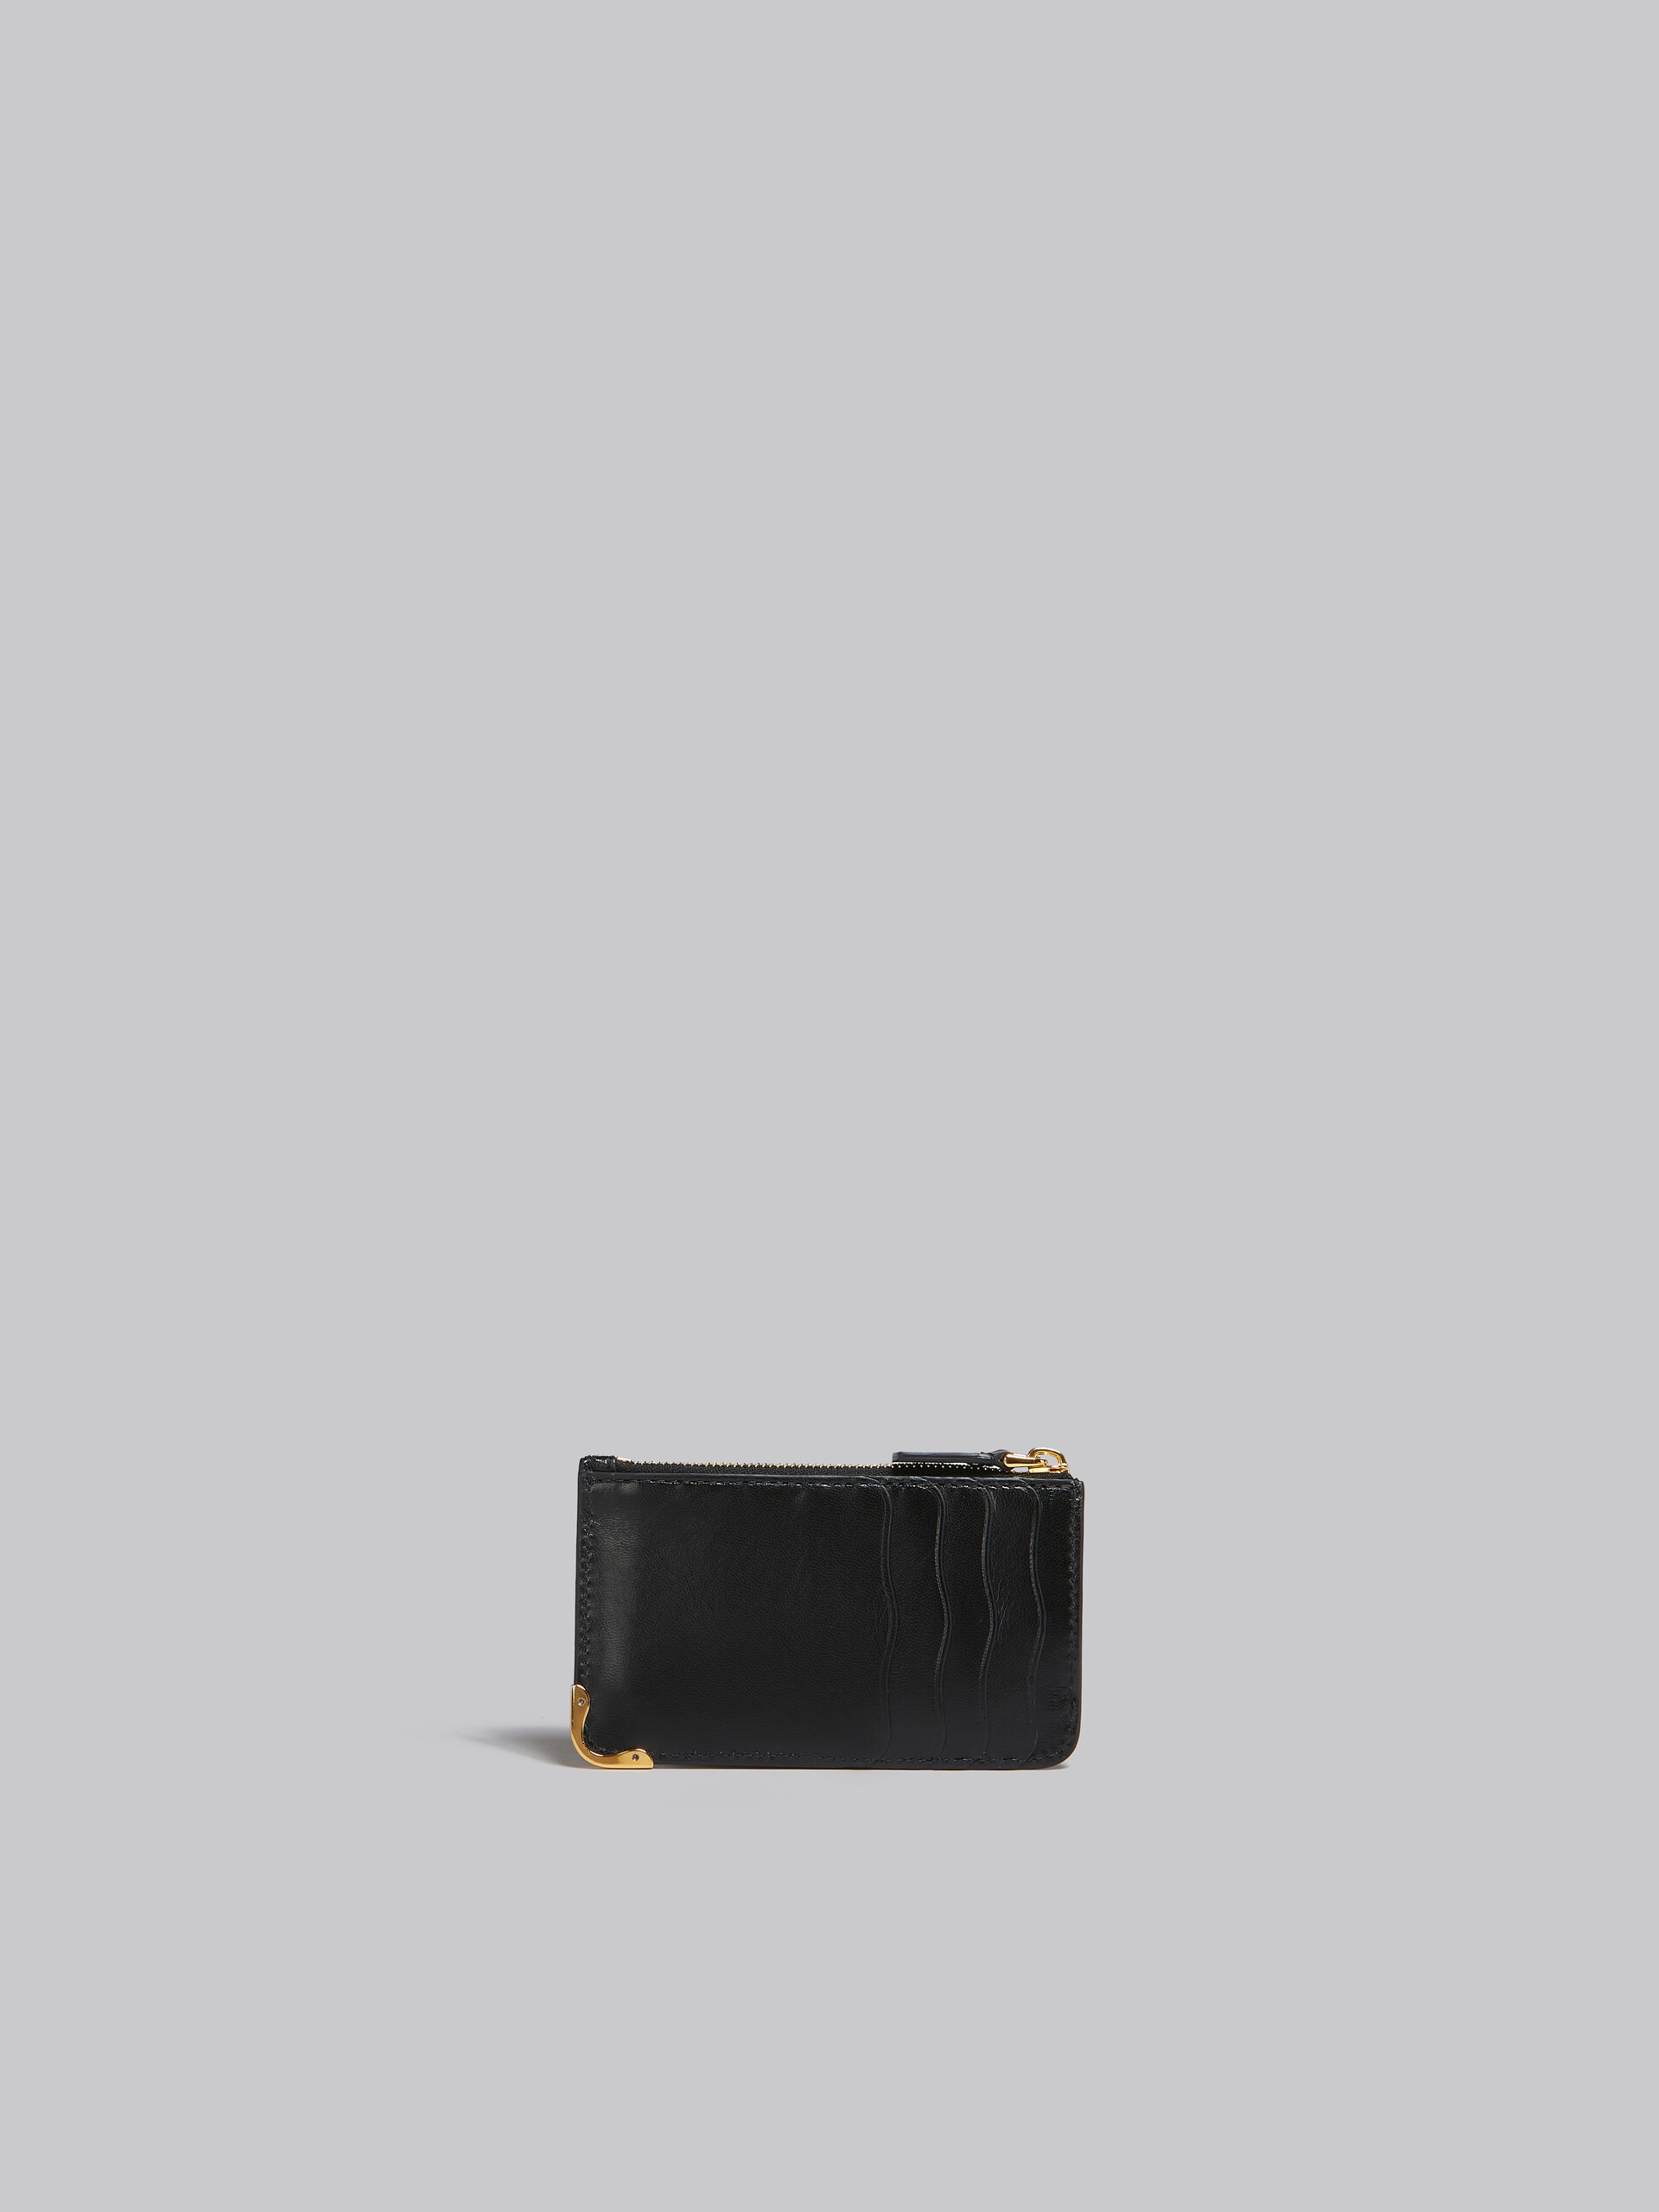 Schwarzes Lederportemonnaie mit wellenförmigen Fächern - Brieftaschen - Image 3